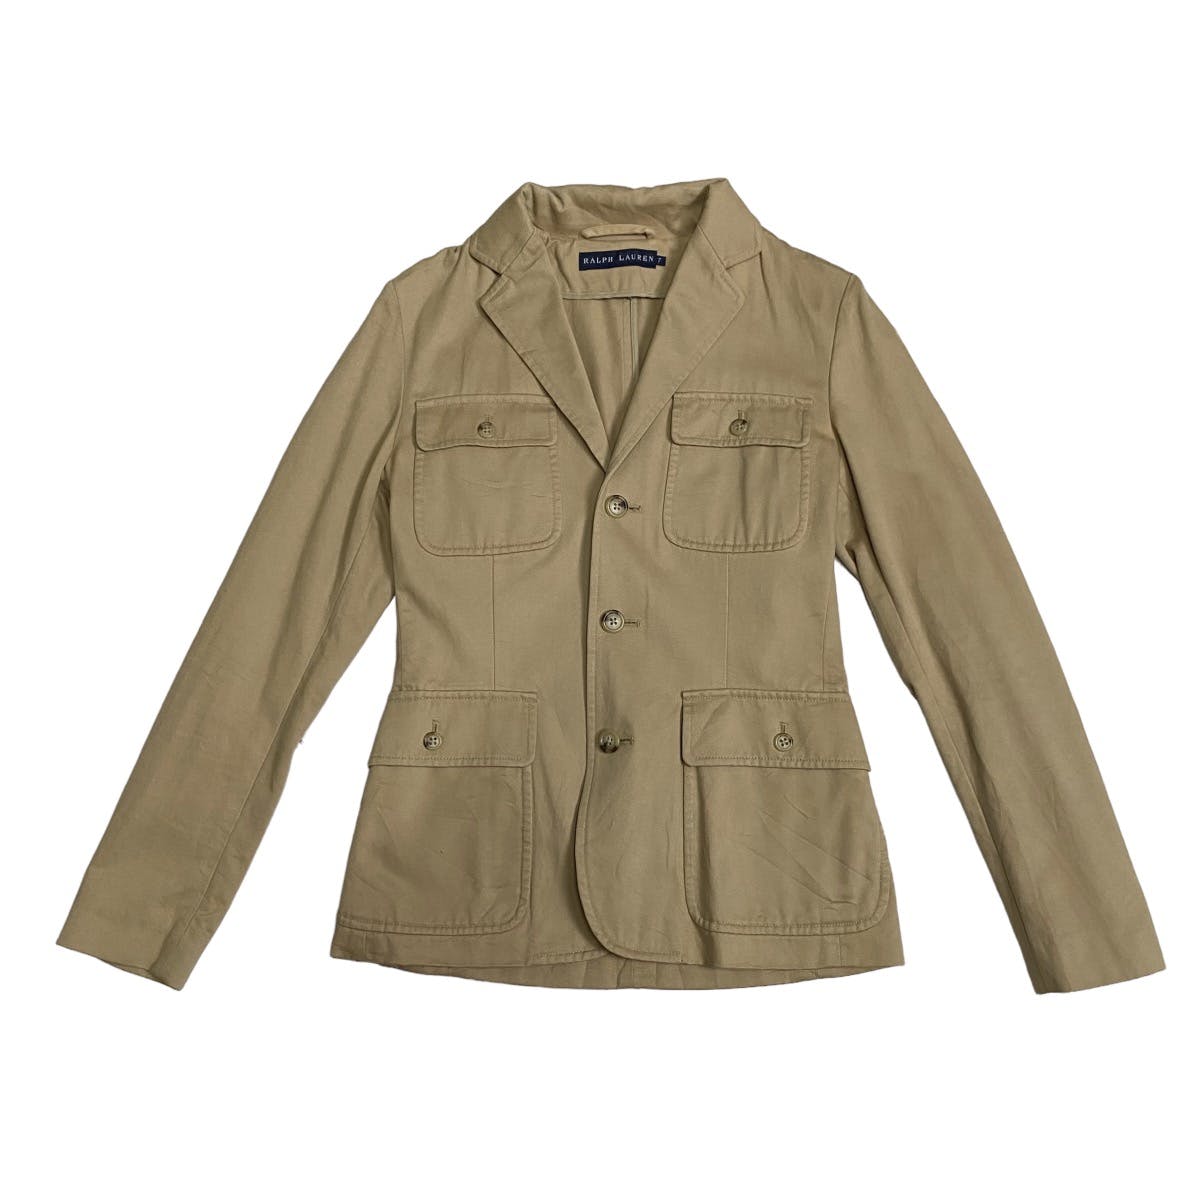 Ralph Lauren 4 pocket jacket - 5